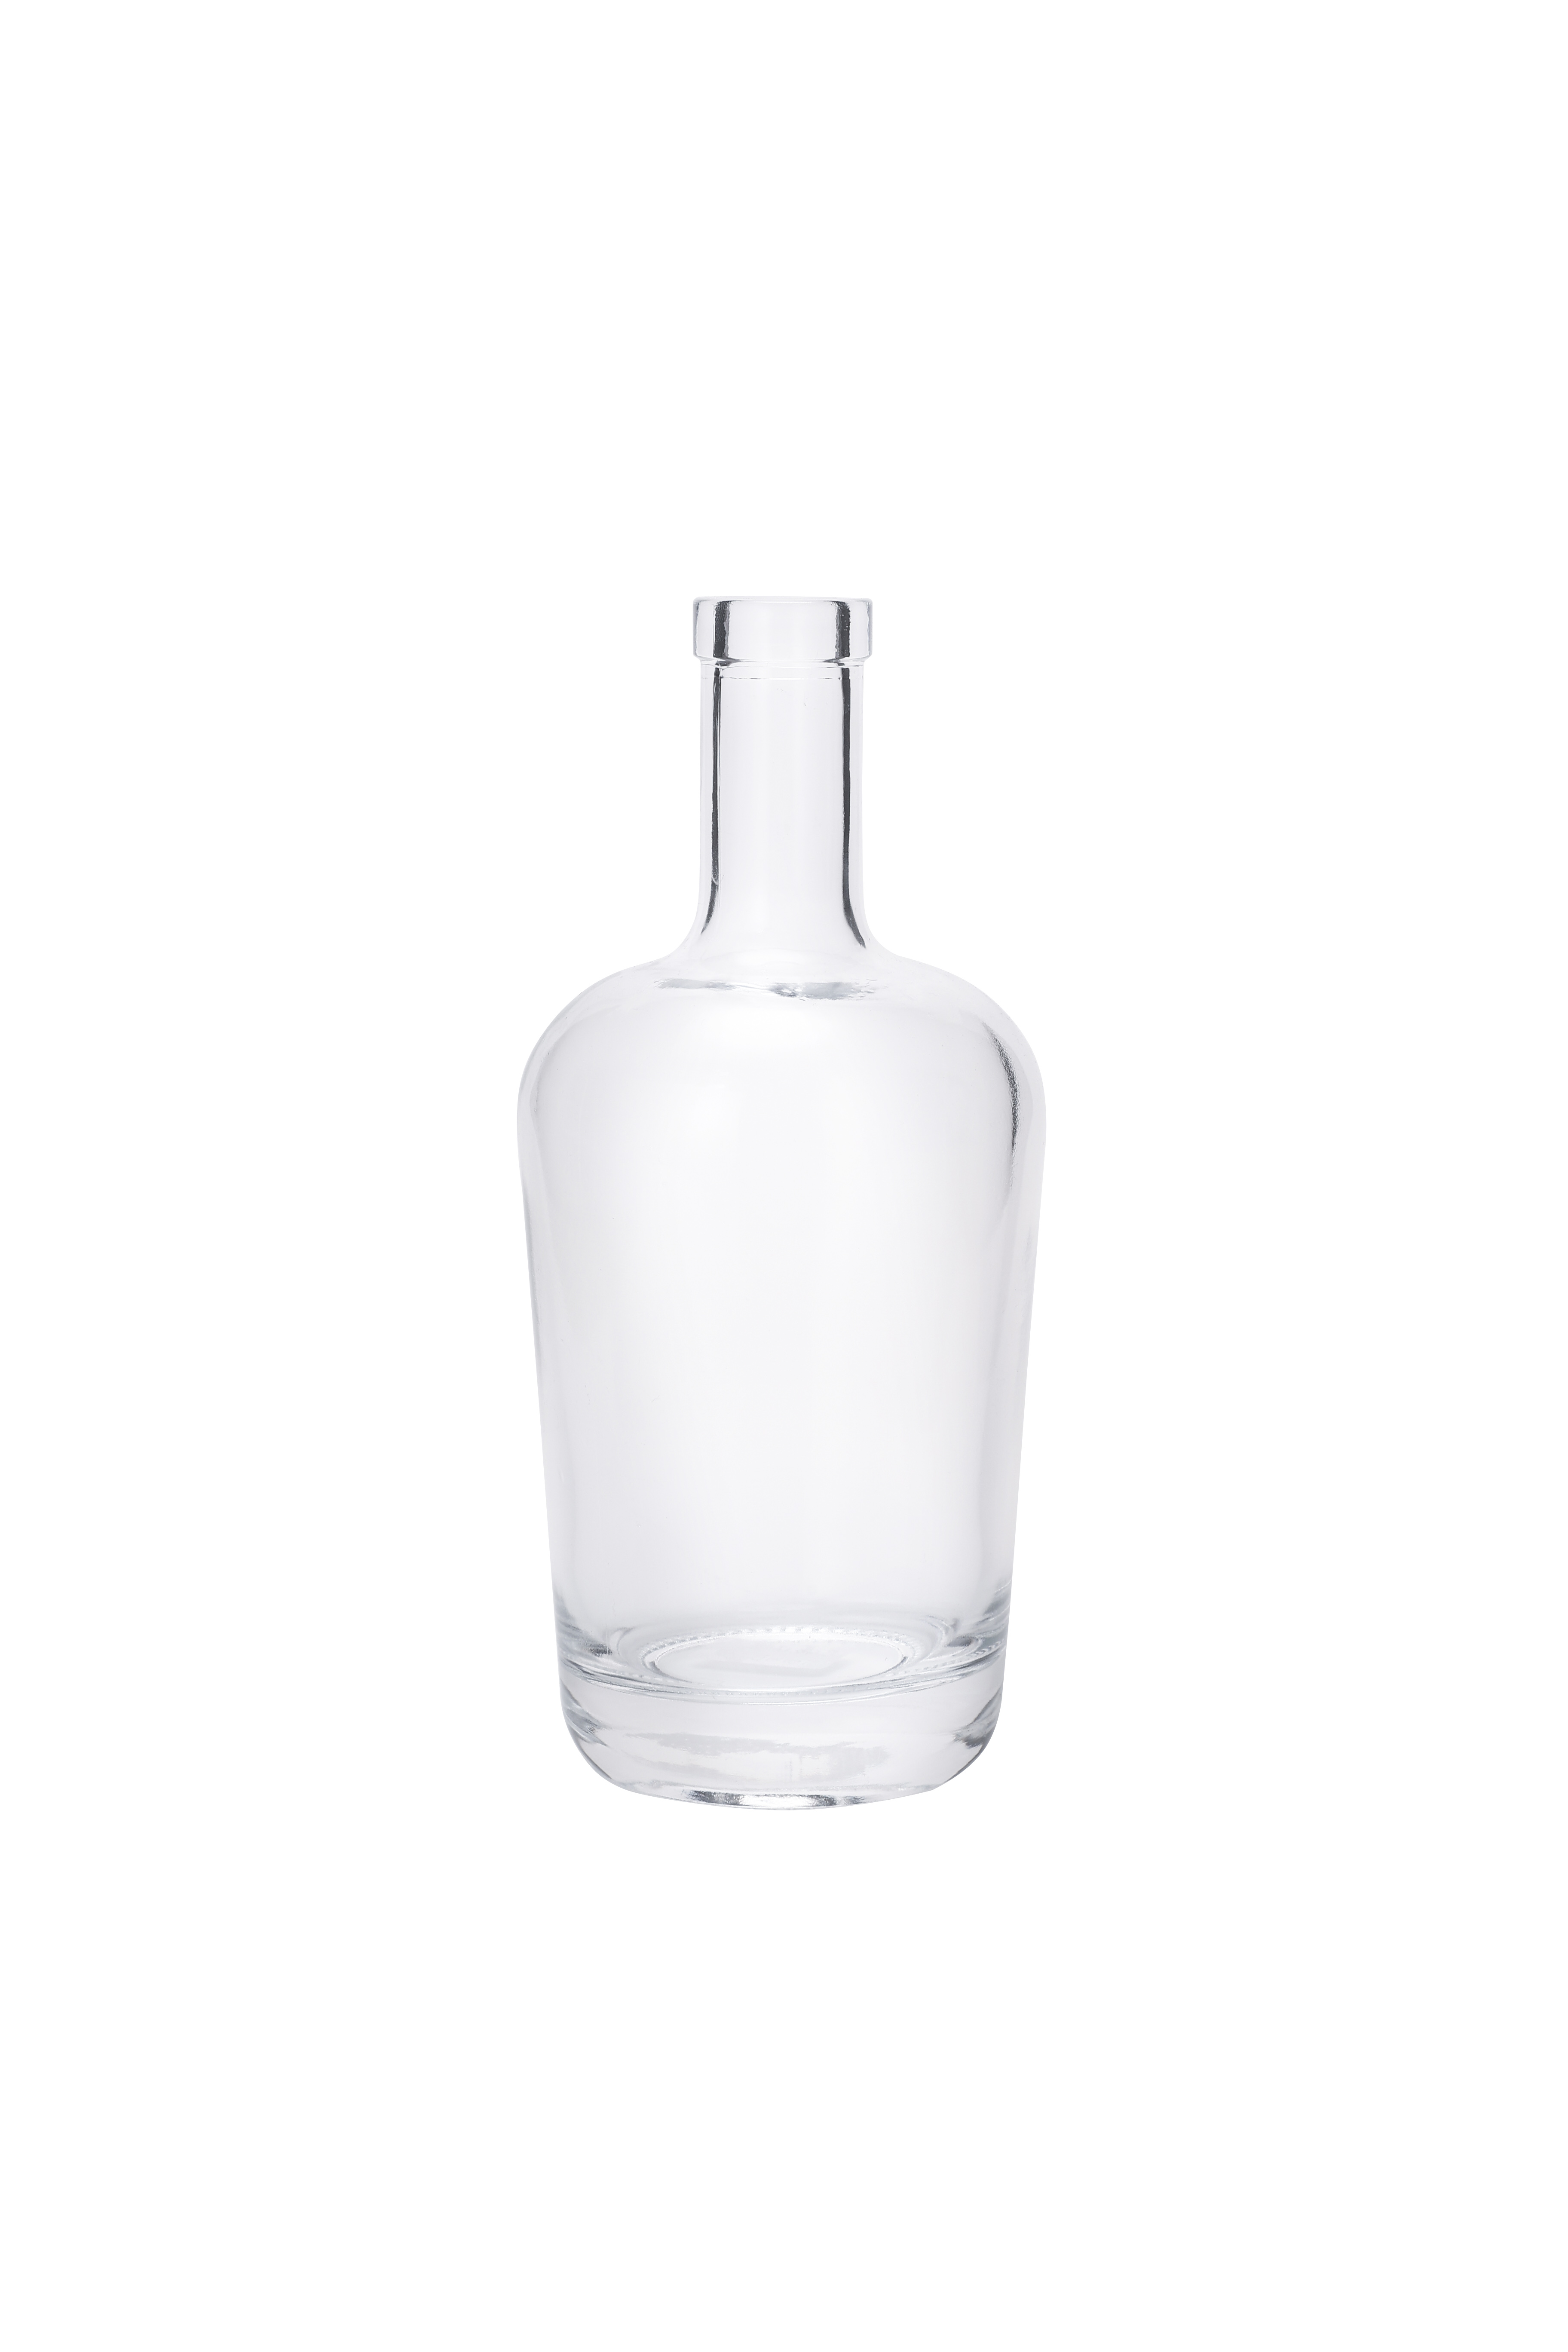 Custom Glass Liquor Wine Whisky Vodka Tequila Bottle With Cork 